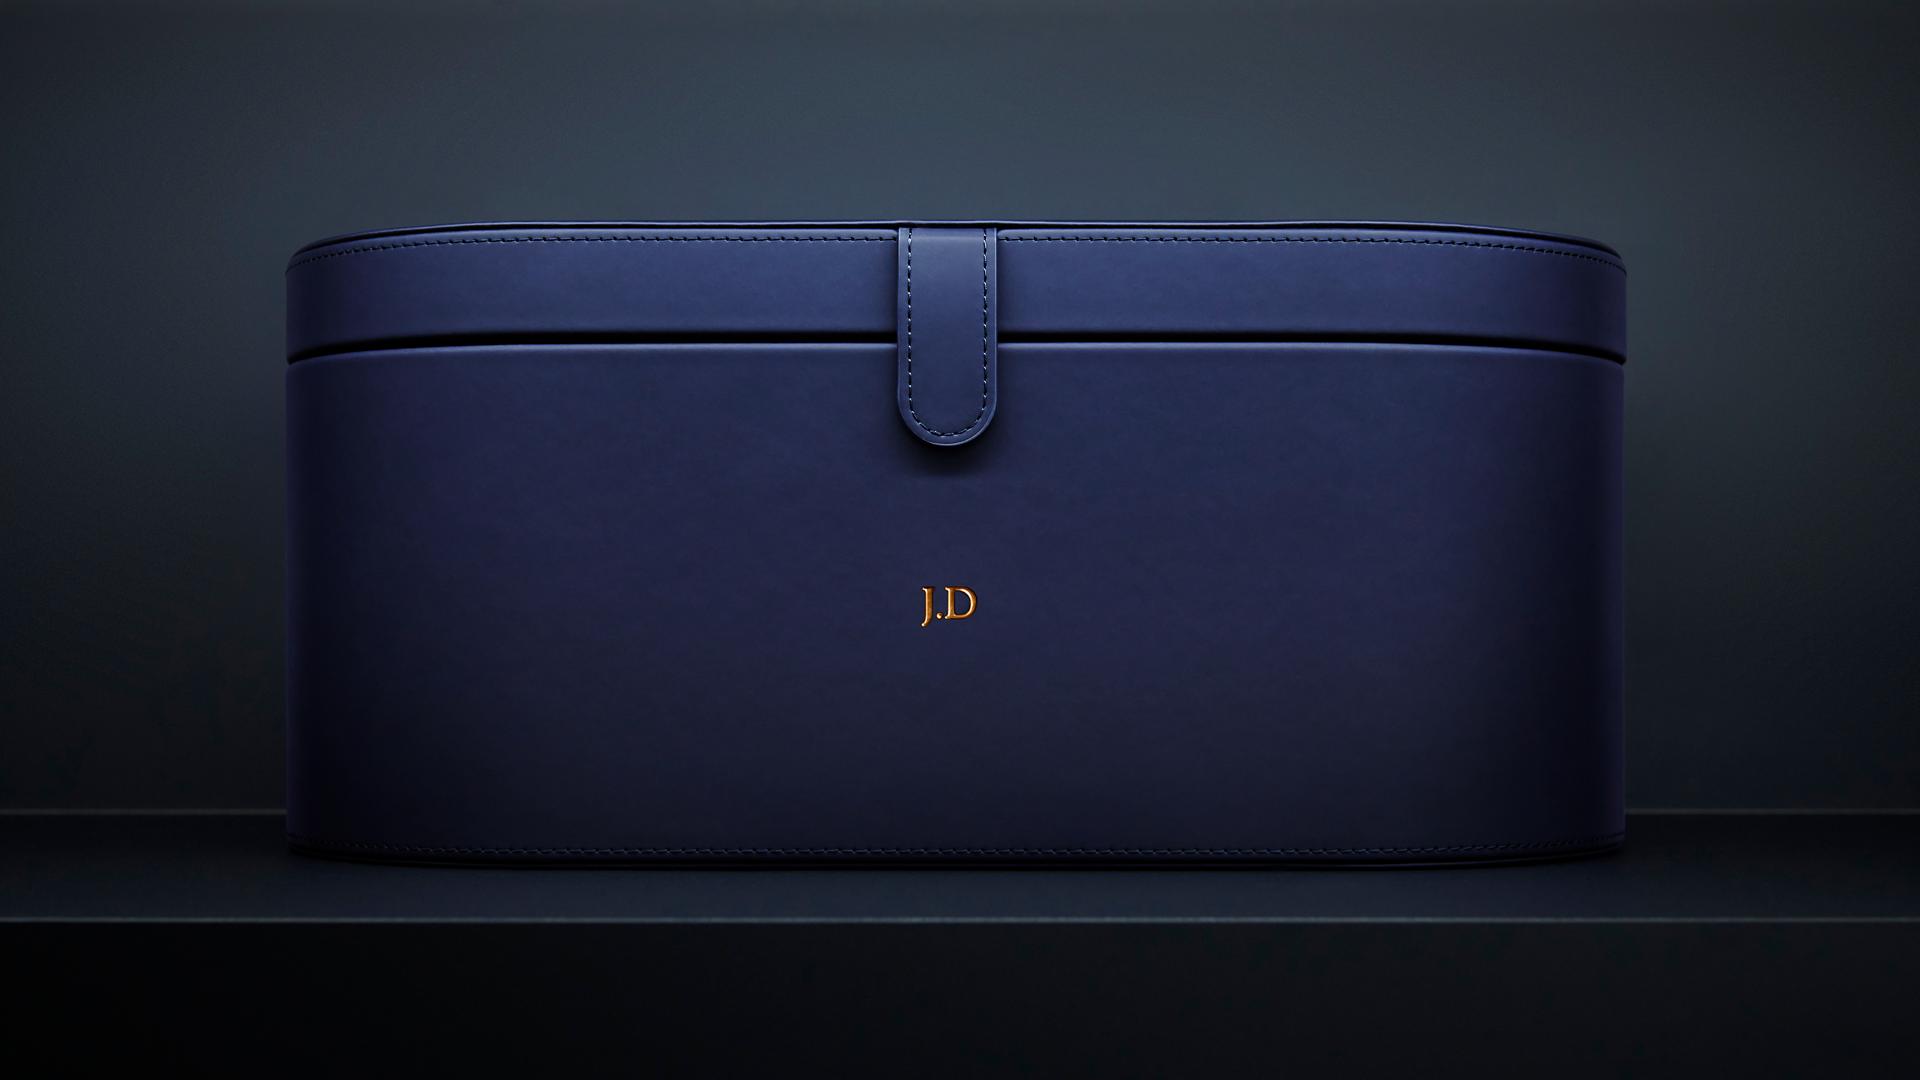 Dyson-designed travel pouch